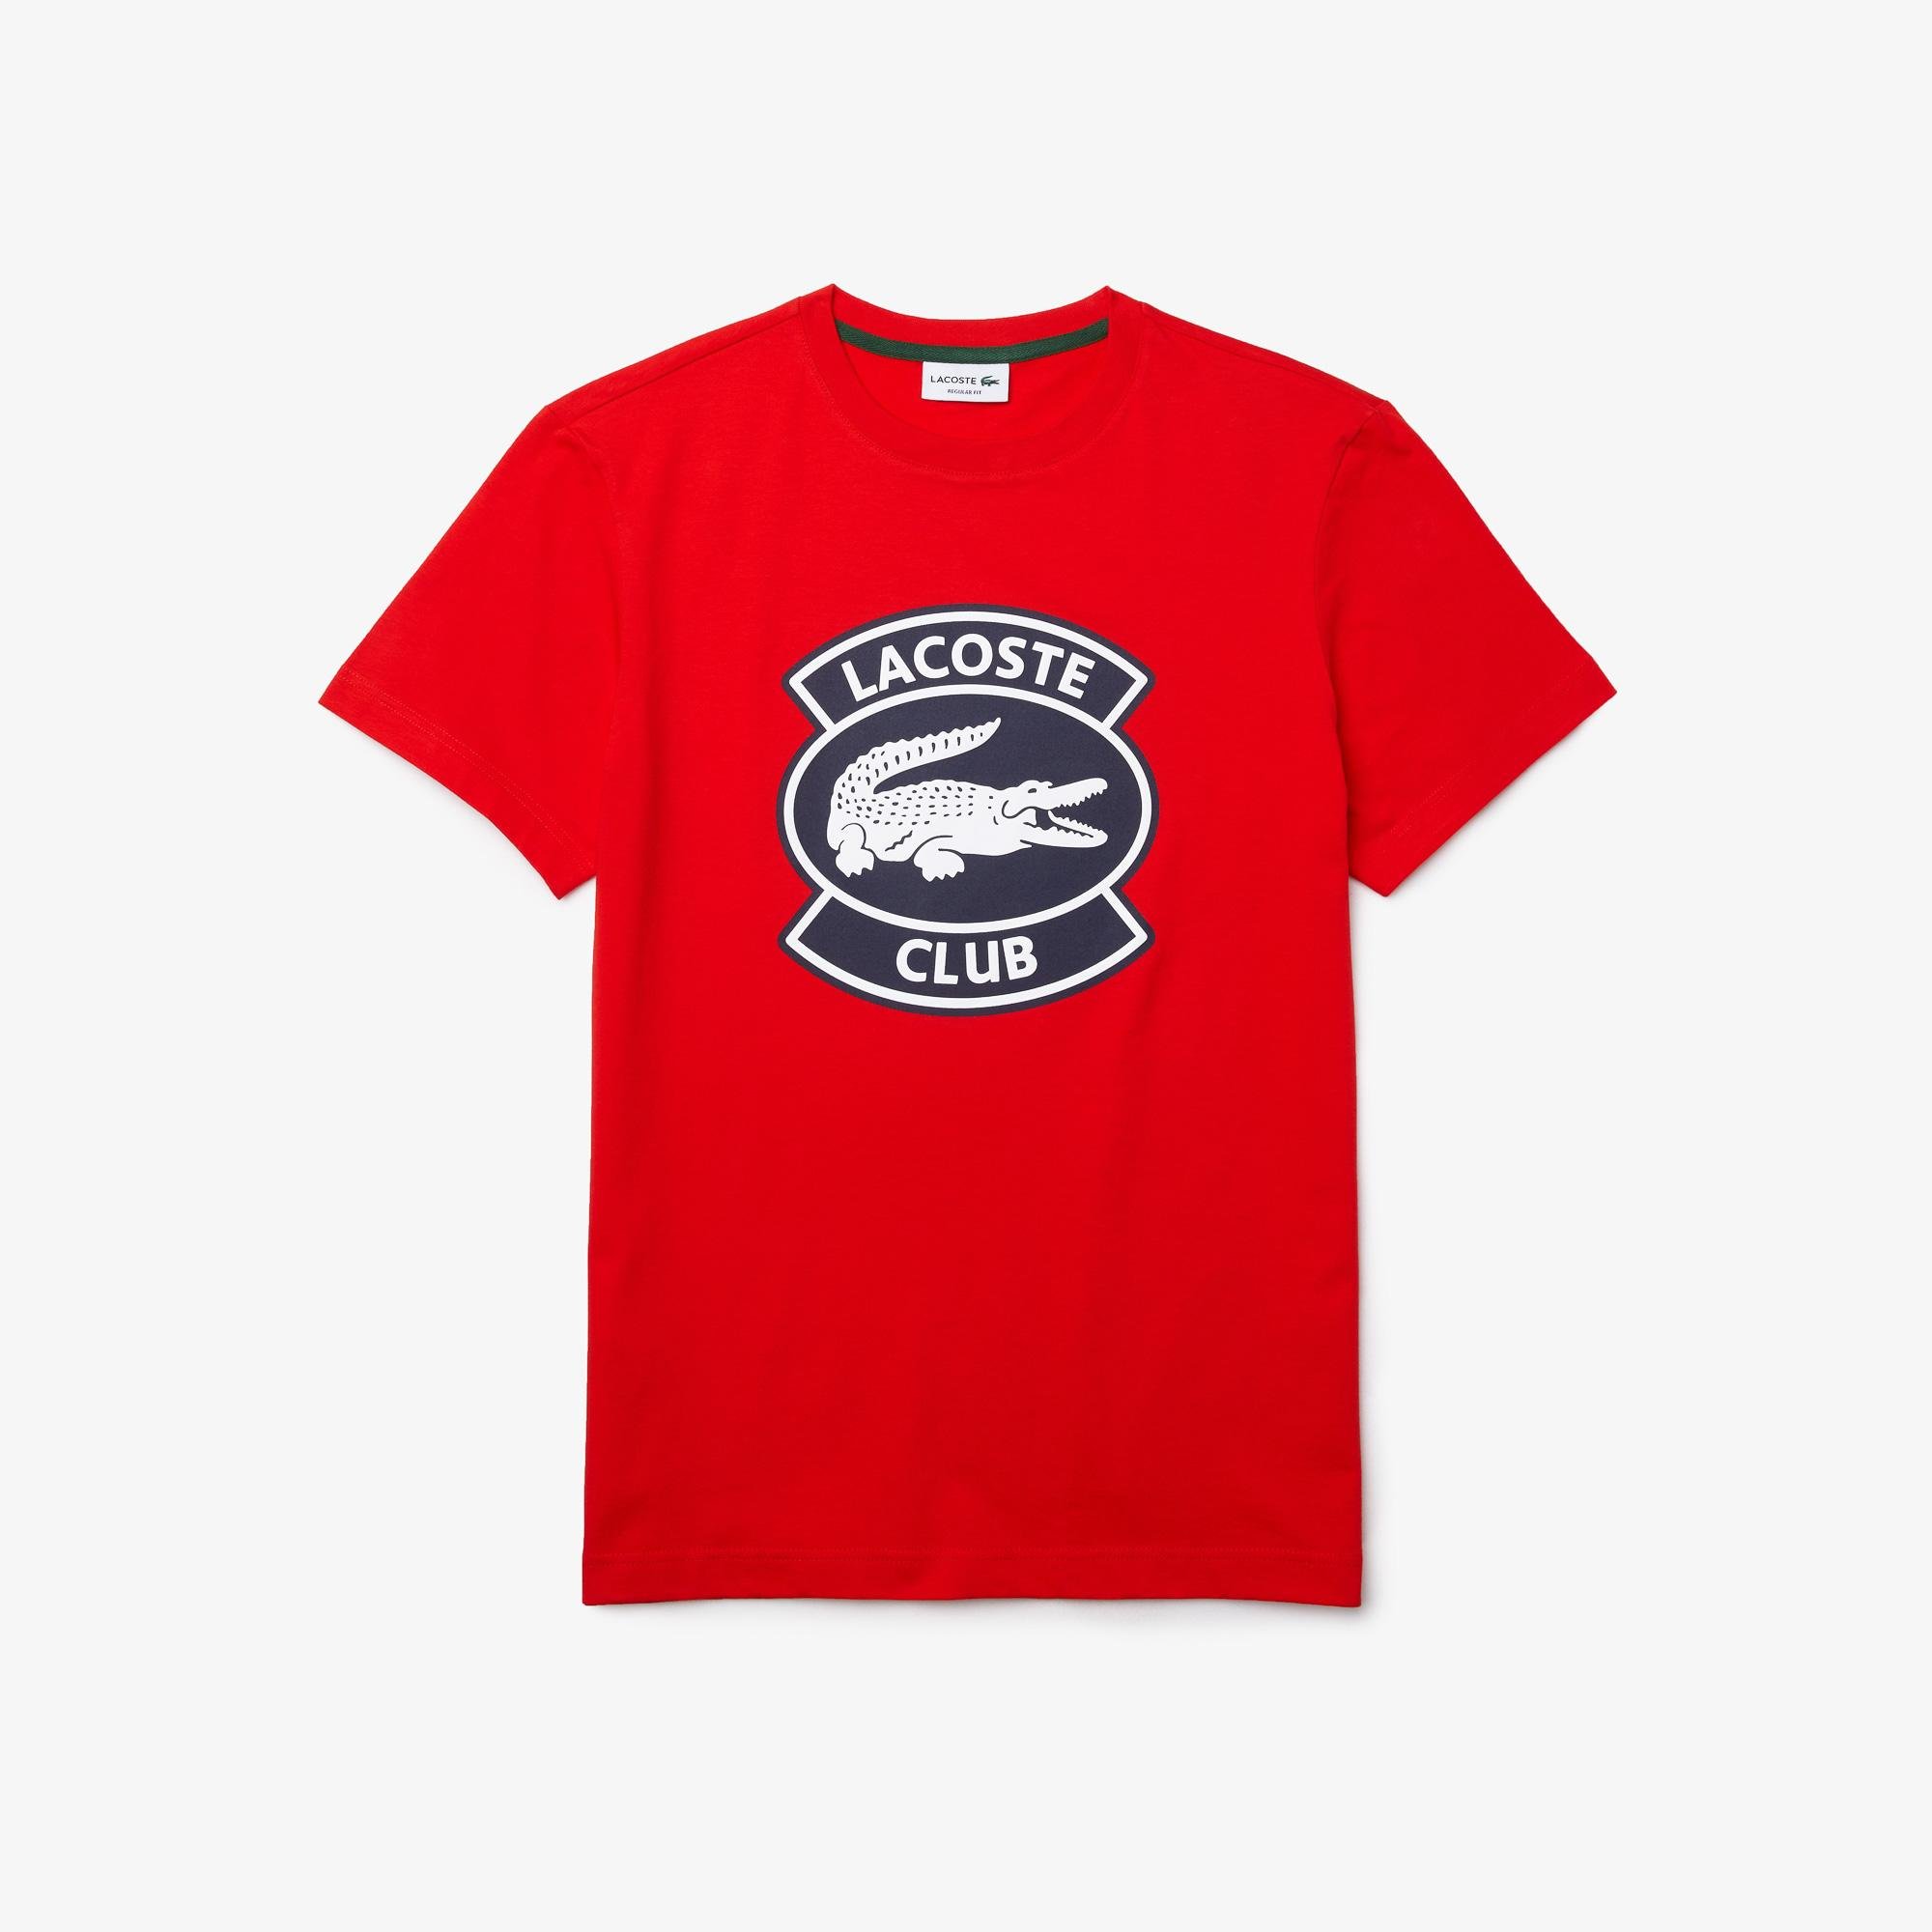 Lacoste Męski bawełniany T-shirt z okrągłym dekoltem i dużą naszywką Lacoste Club